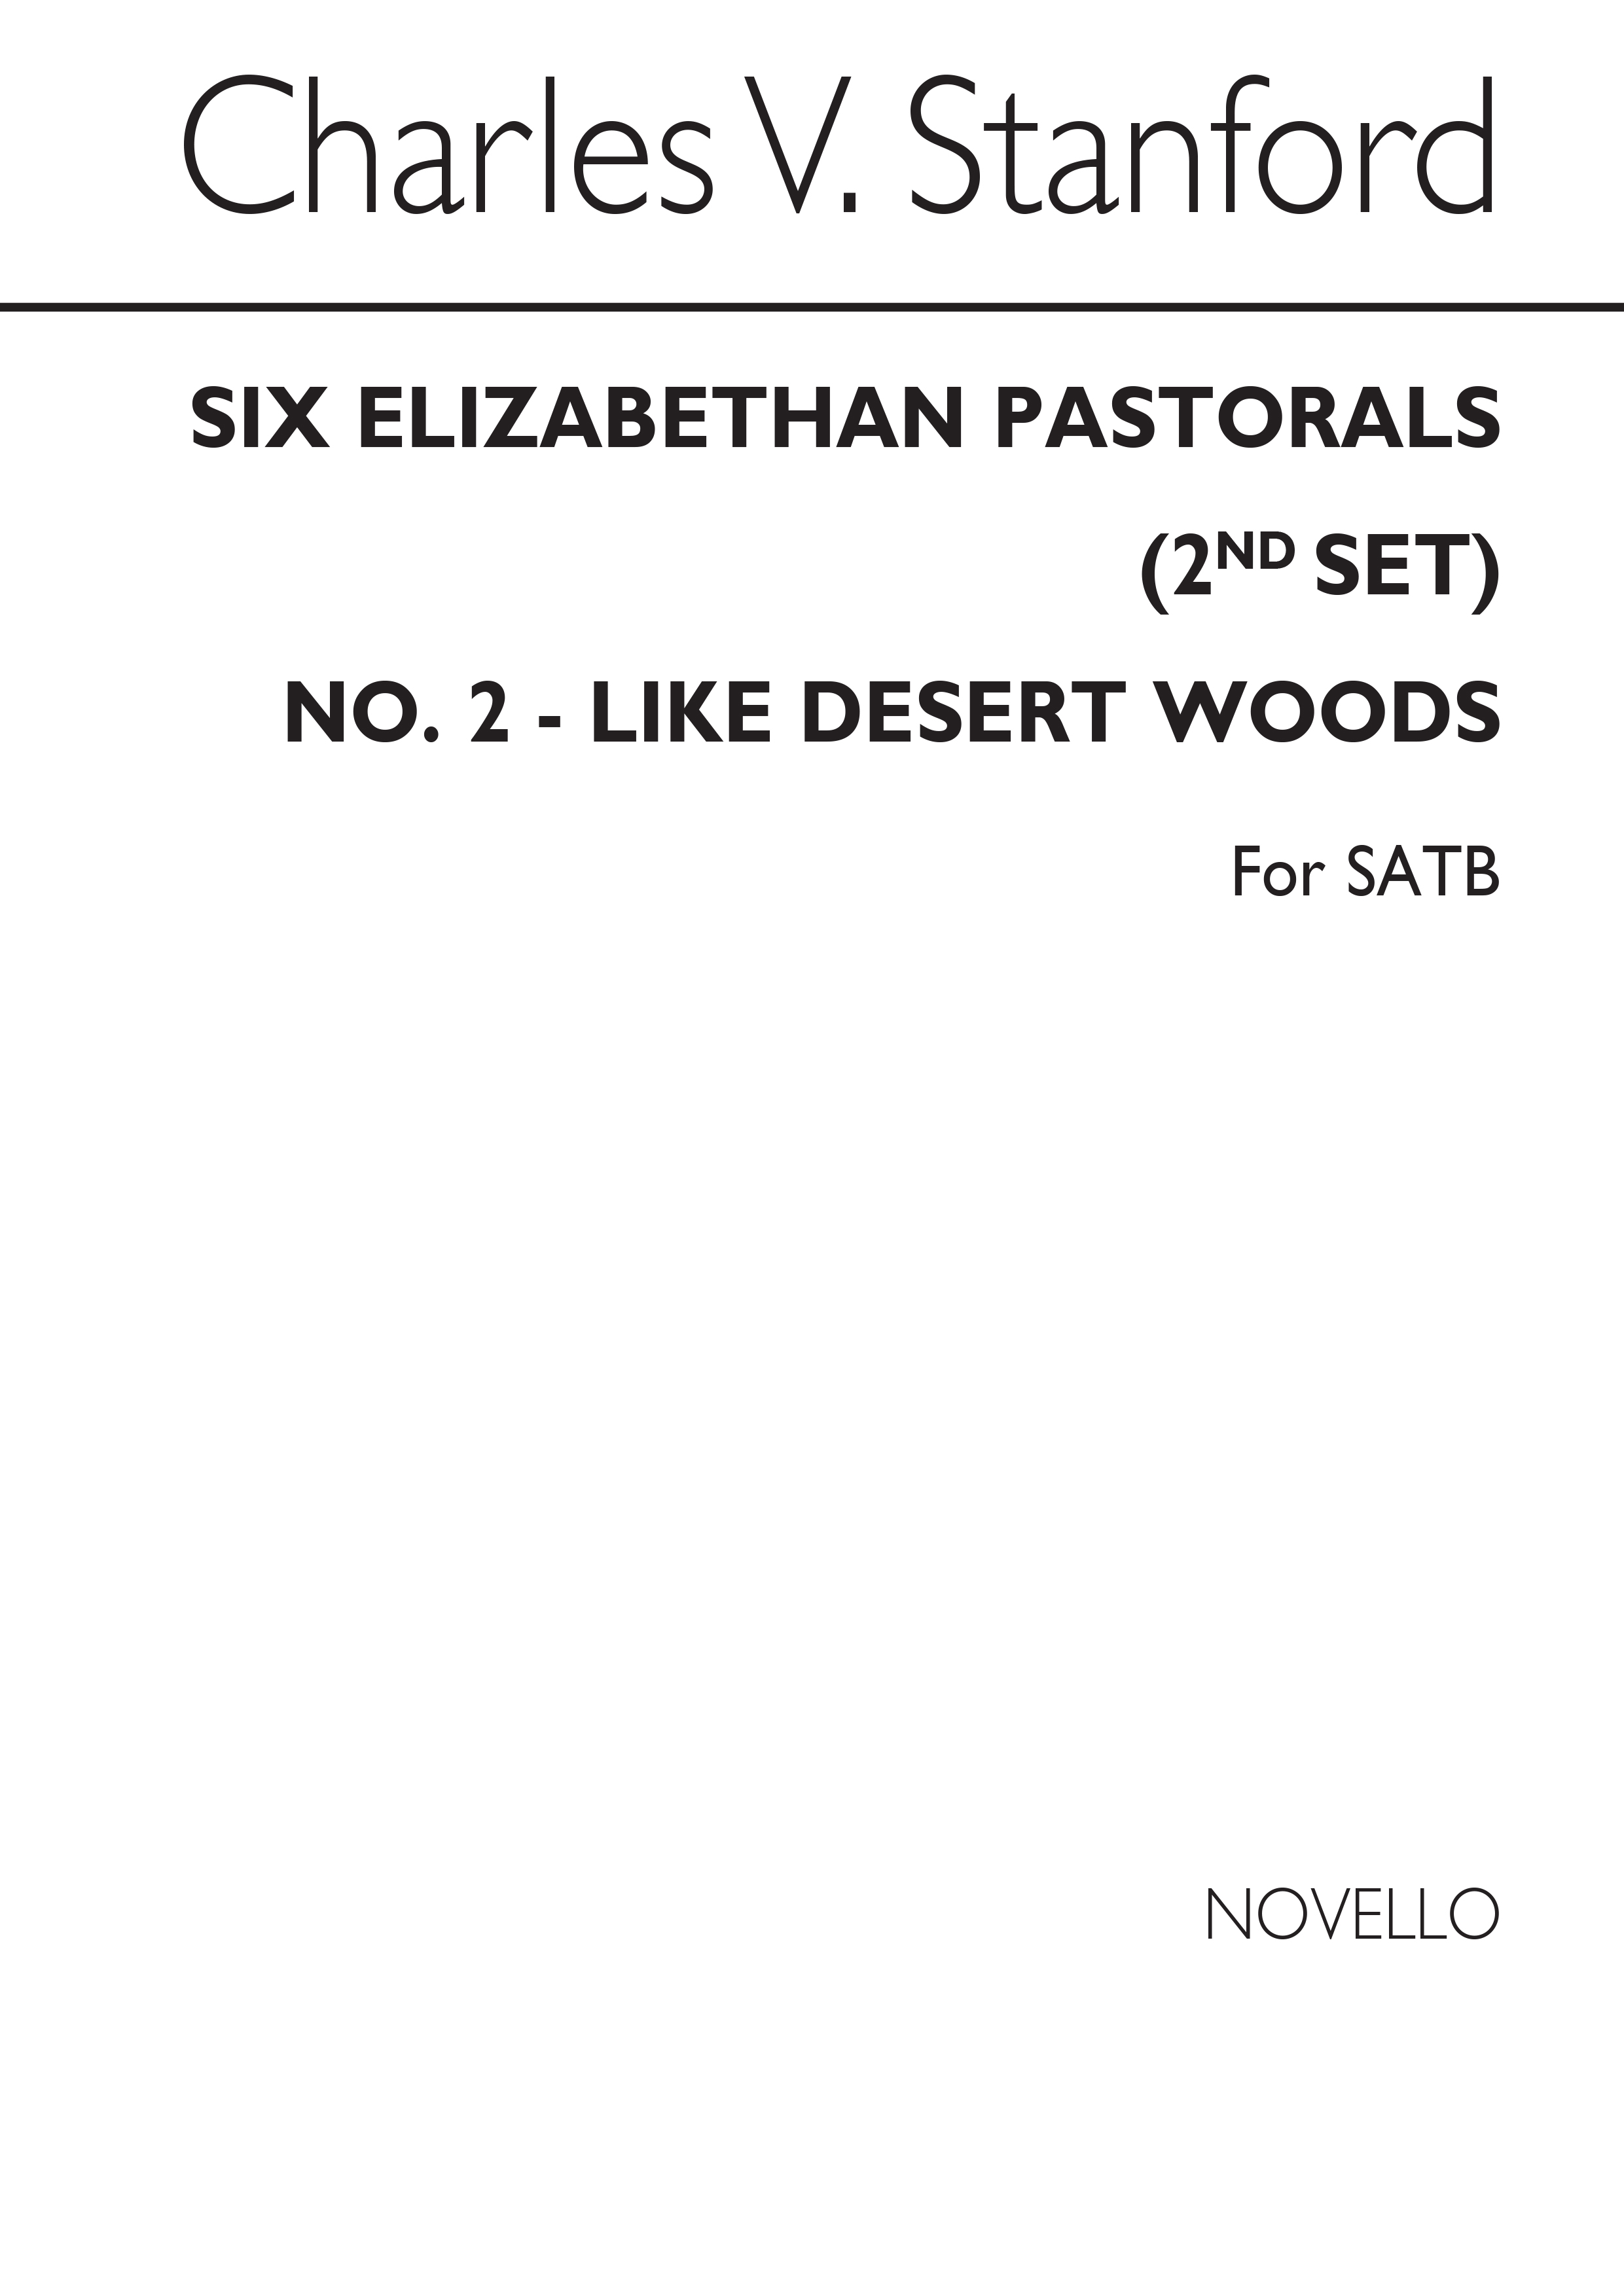 Charles Villiers Stanford: Like Desert Woods No2 Elizabethan Pastorals Set2: